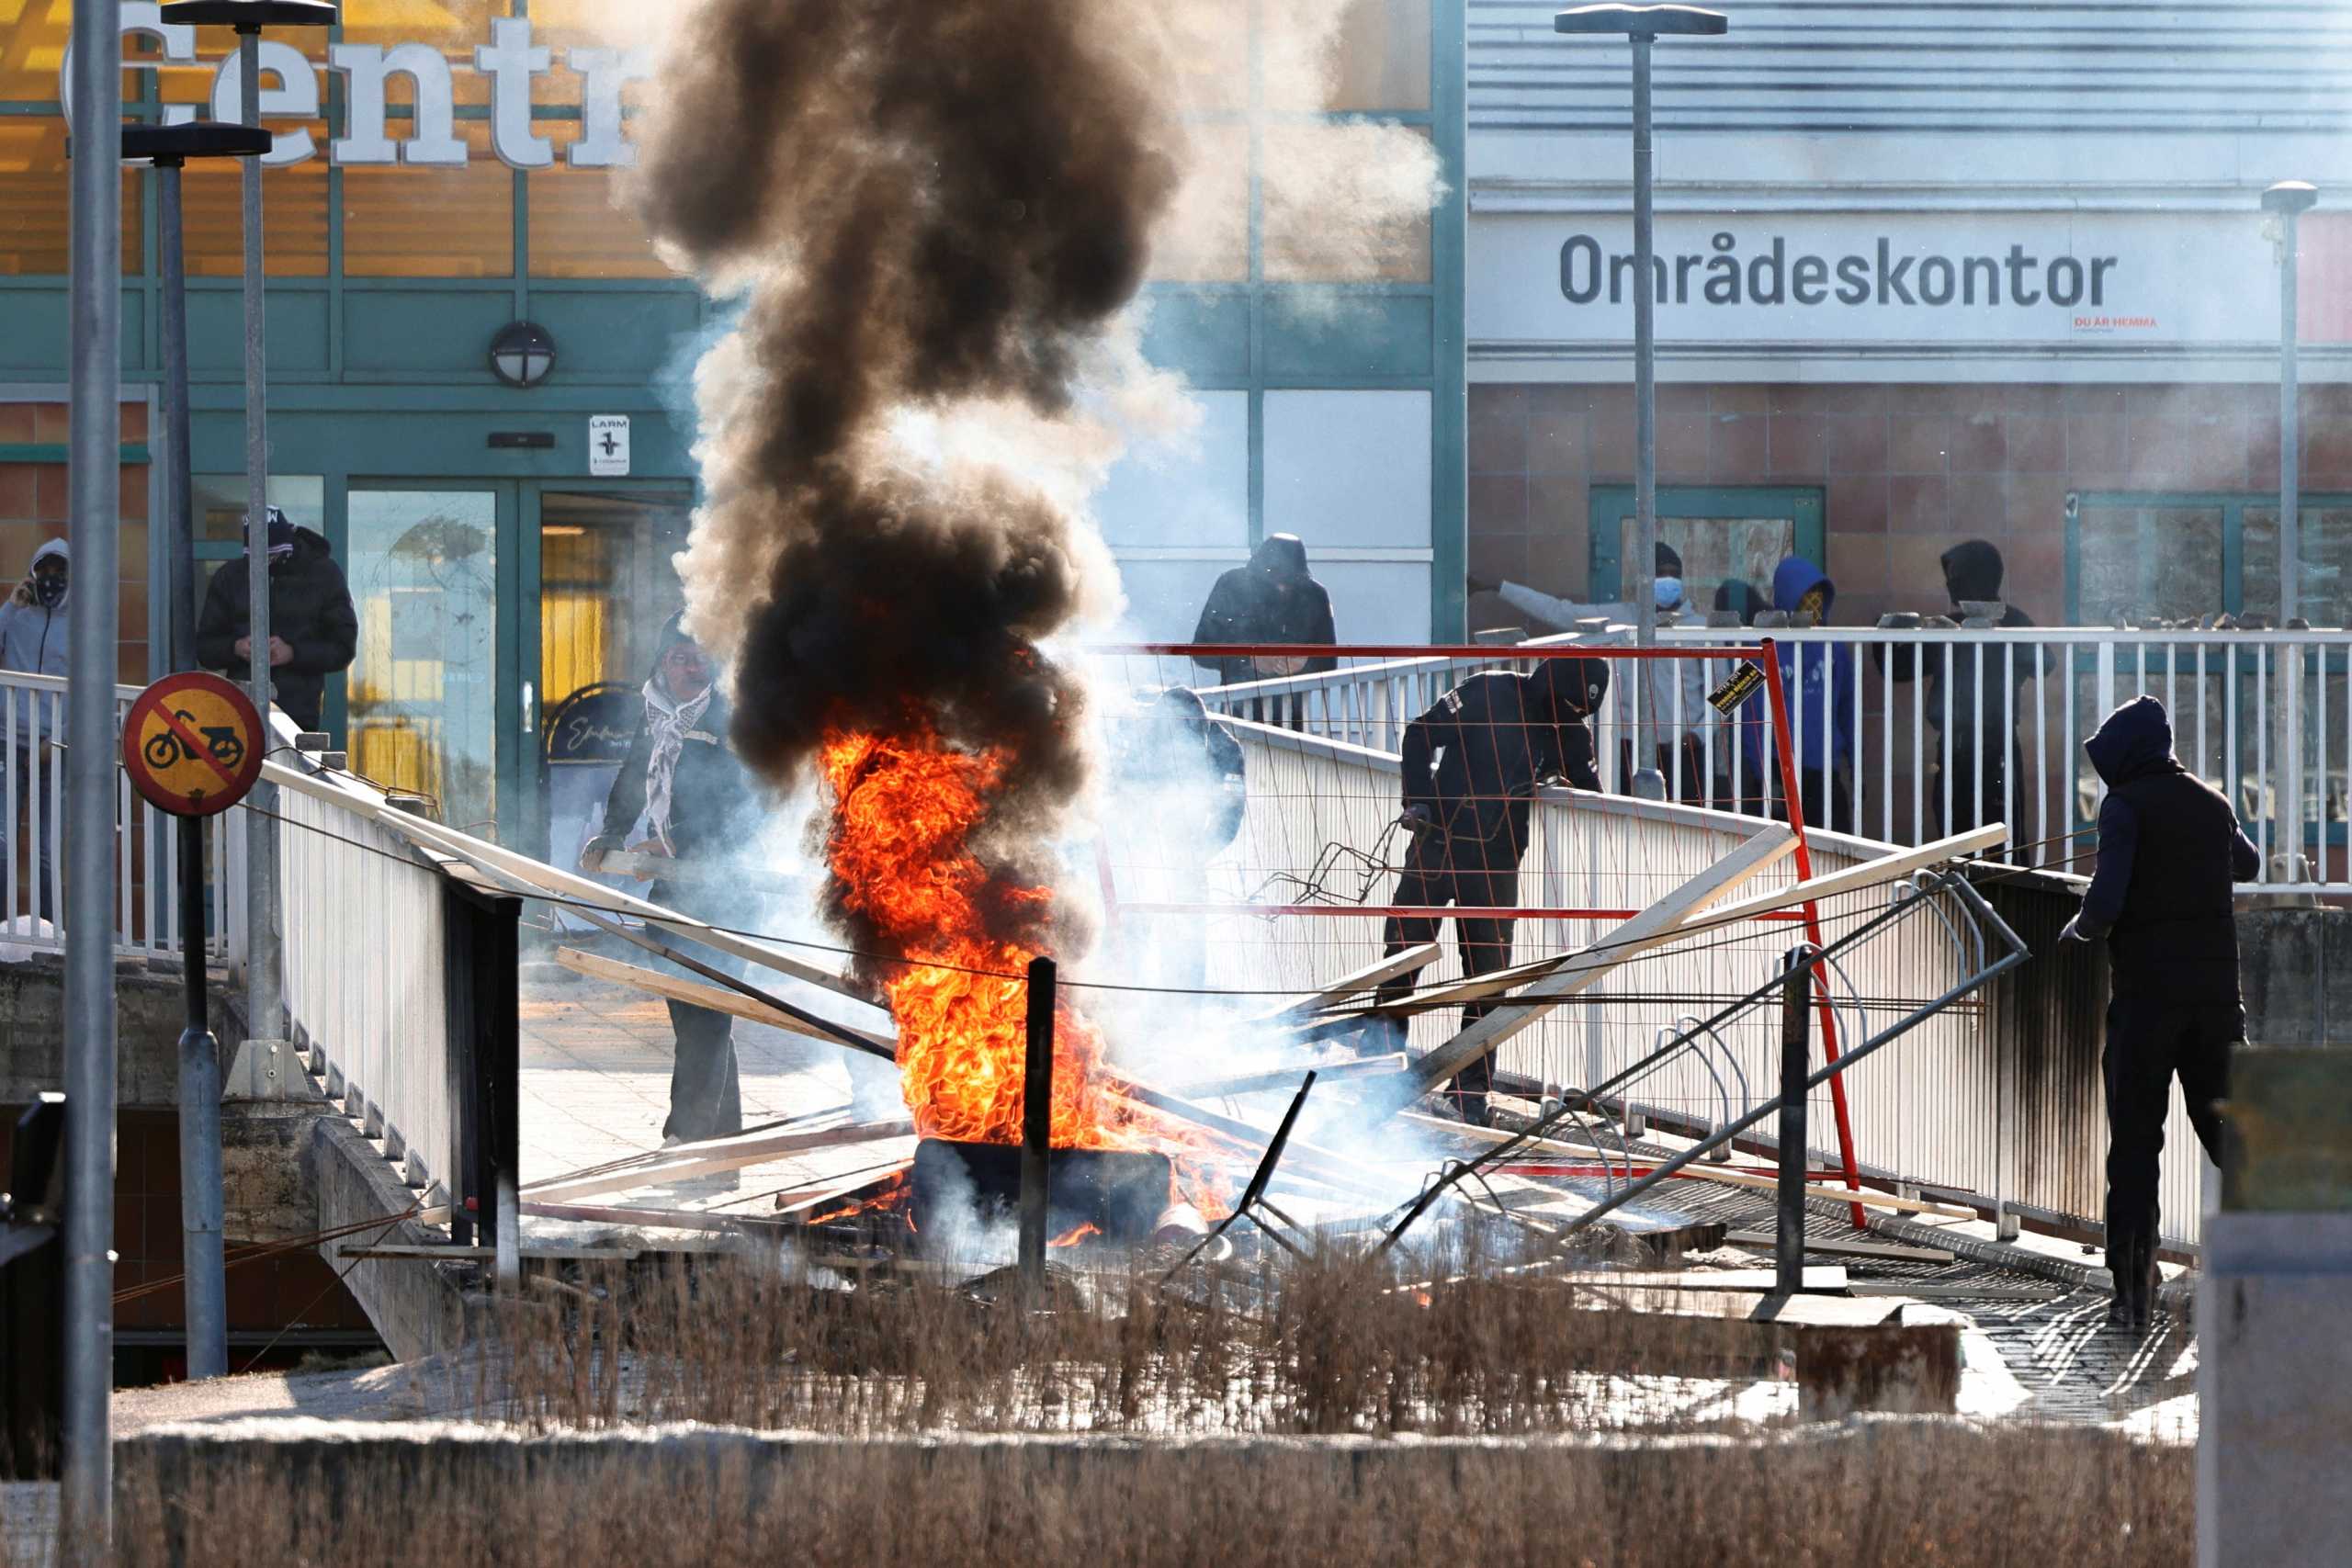 Σουηδία: Σφαίρες σε διαδηλωτές κατά της ακροδεξιάς – «Εξοστρακίστηκαν» λέει η αστυνομία